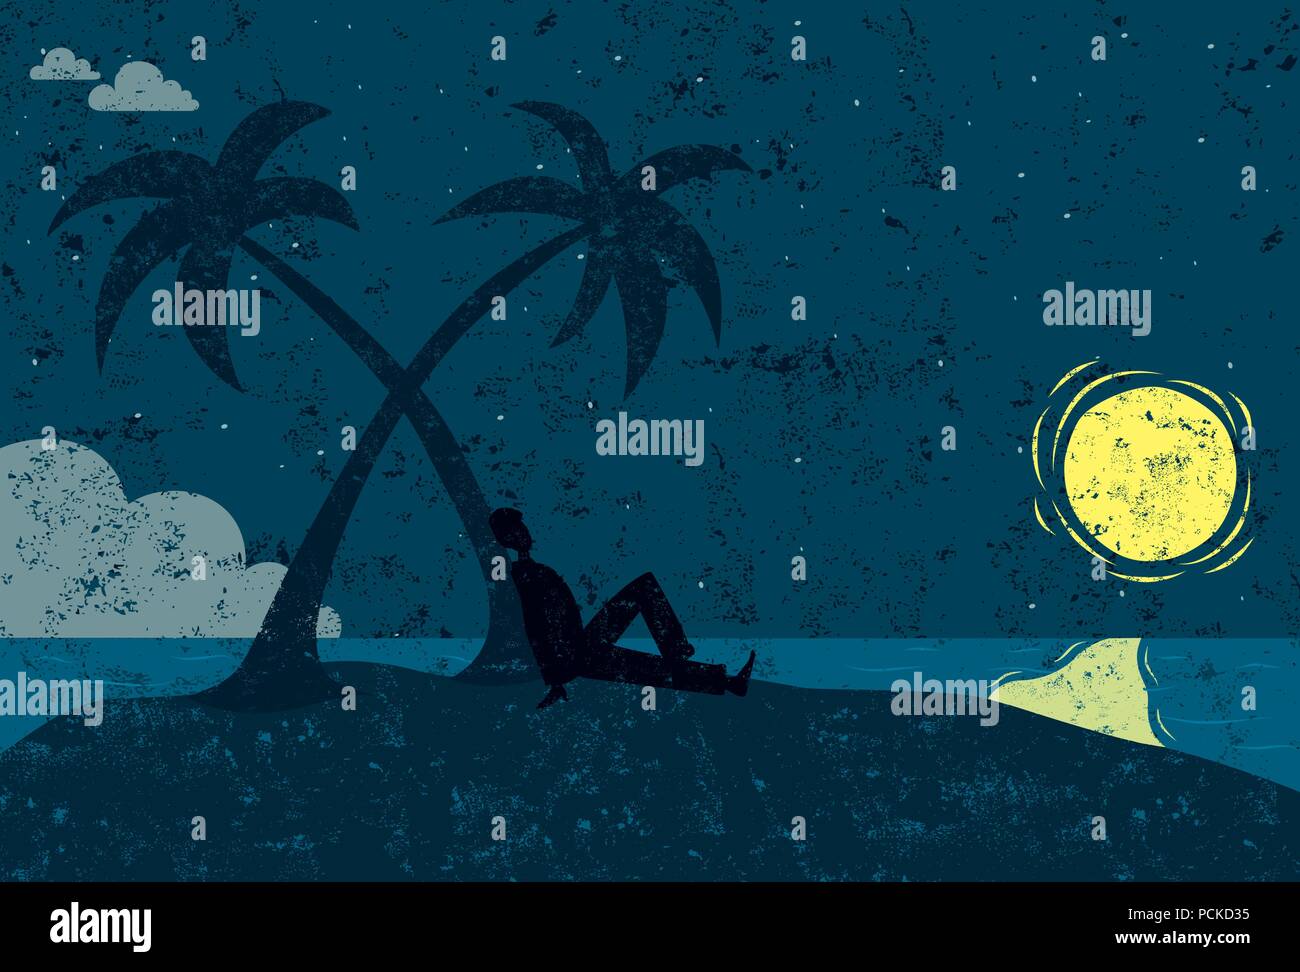 L'homme sur une île en silhouette d'un homme assis à côté d'un palmier sur une île déserte à la recherche à la lune. Illustration de Vecteur